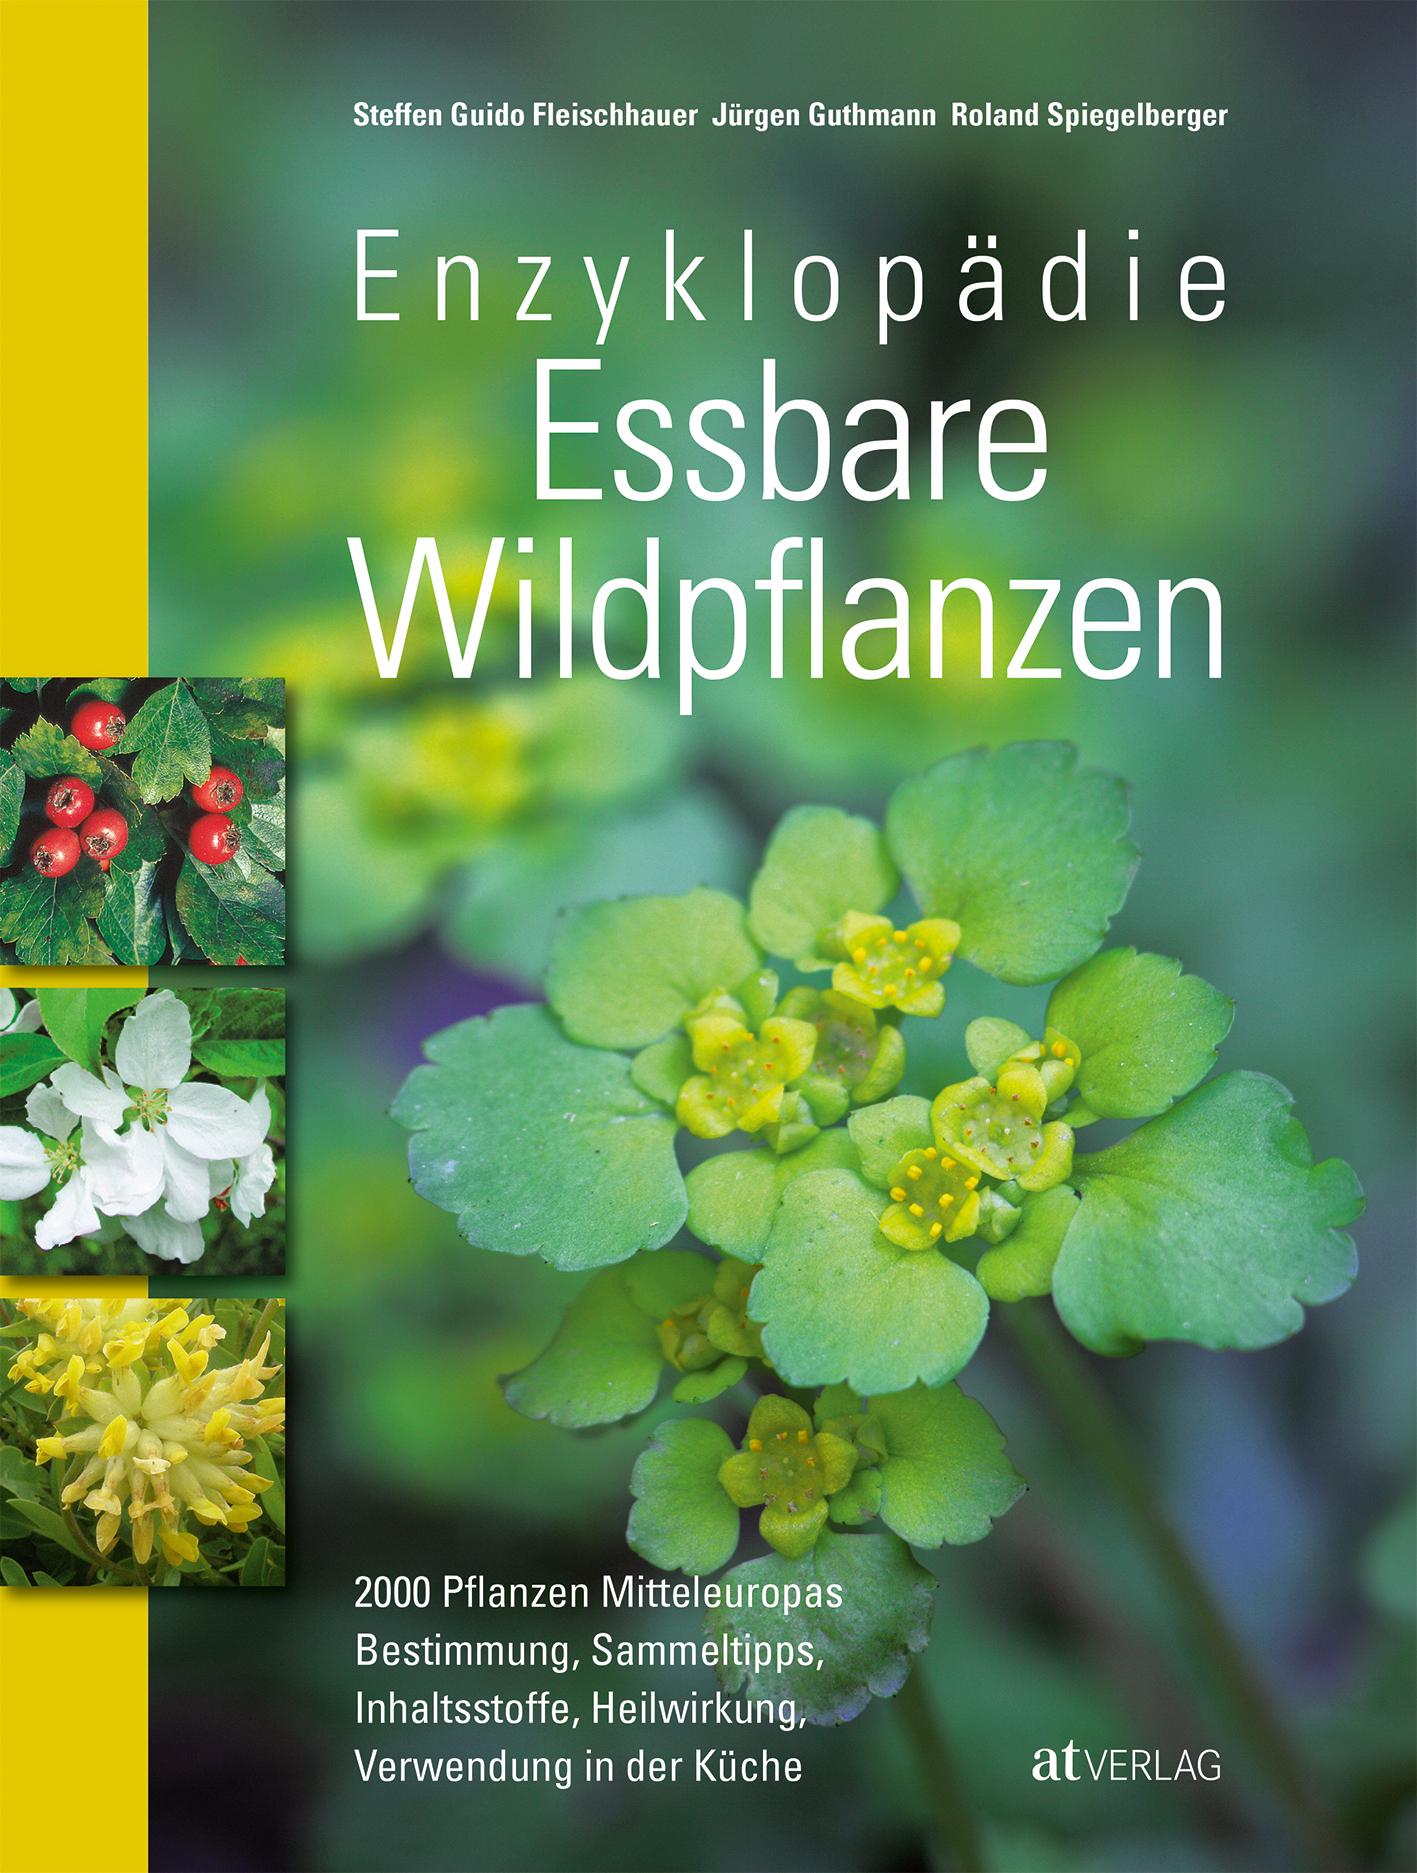 Enzyklopädie essbare Wildpflanzen 2000 Pflanzen Mitteleuropas. Bestimmung, Sammeltipps, Inhaltsstoffe, Heilwirkung, Verwendung in der Küche